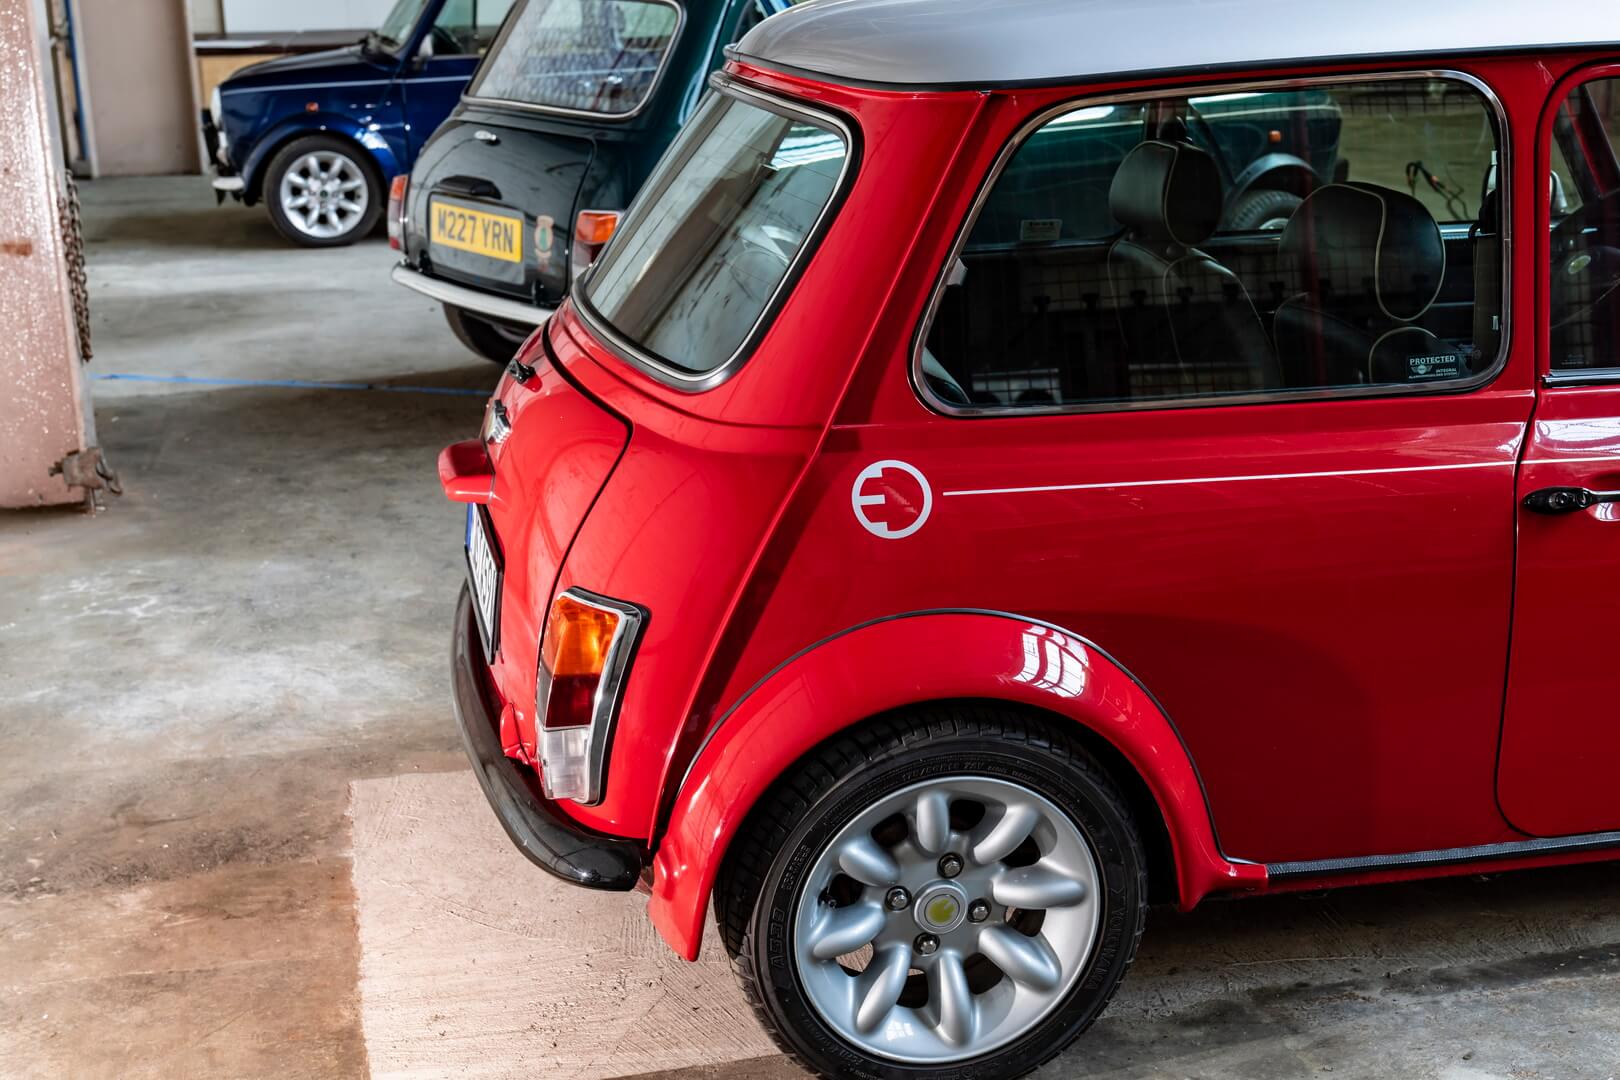 Команда завода MINI в Оксфорде объединила концепцию классического Mini и удовольствие от вождения без вредных выбросов